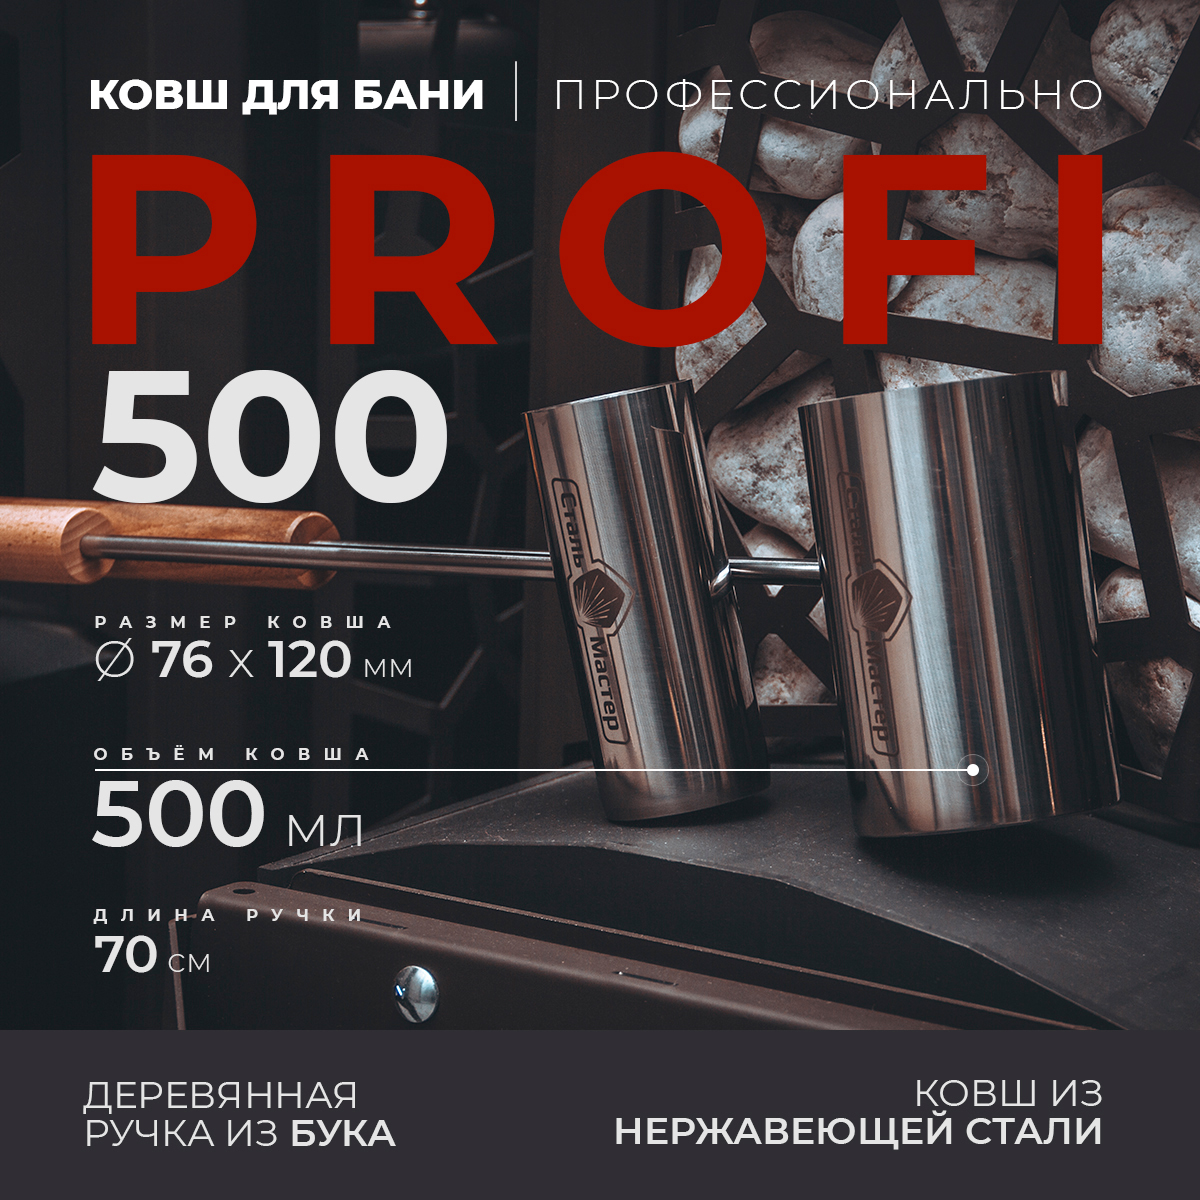 Ковш для бани PROFI 500